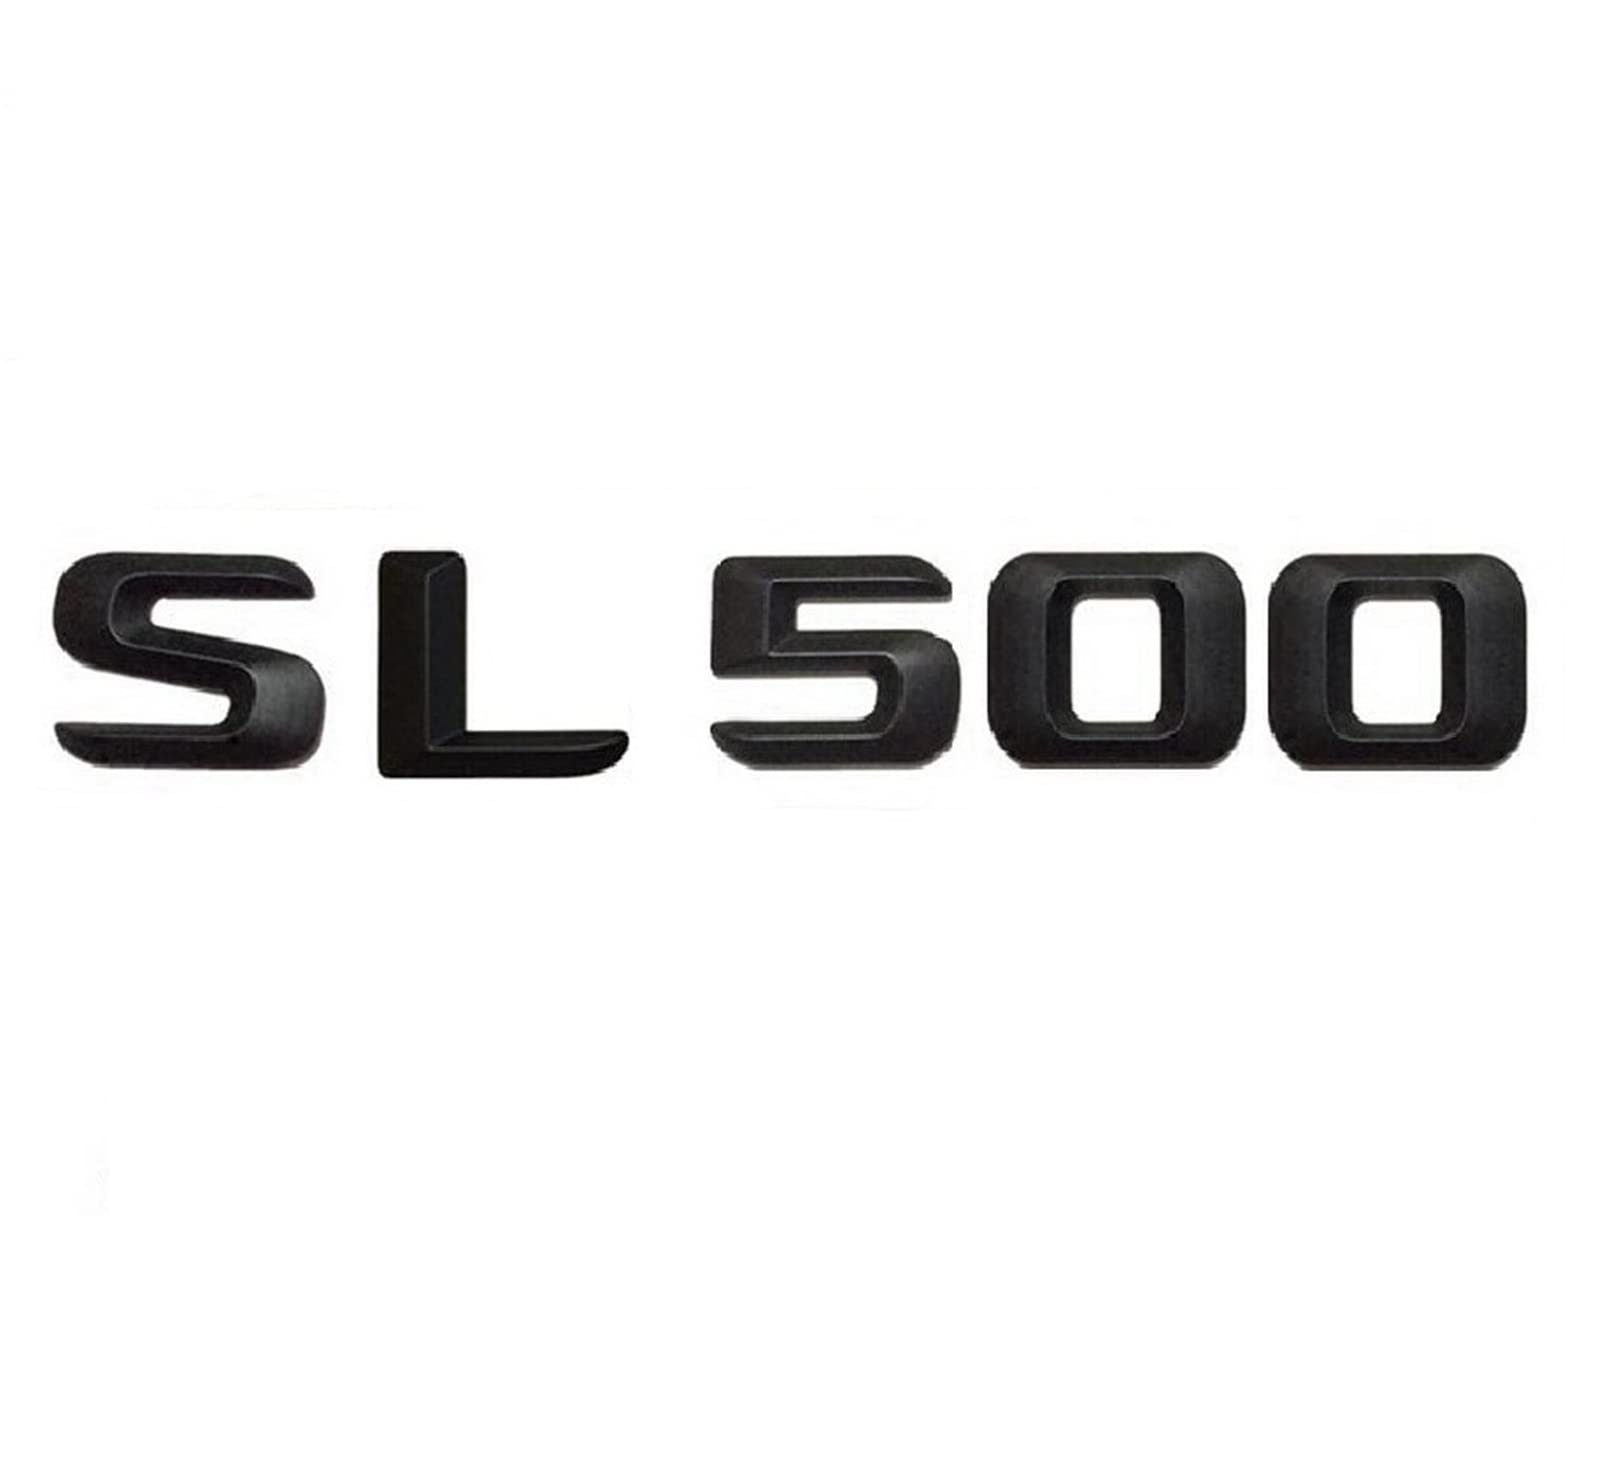 Mattschwarz SL 500 "Kofferraum hinten Buchstaben Wörter Nummer Abzeichen Emblem Aufkleber Aufkleber passend for Mercedes Benz SL Klasse SL500 von LOTOAK